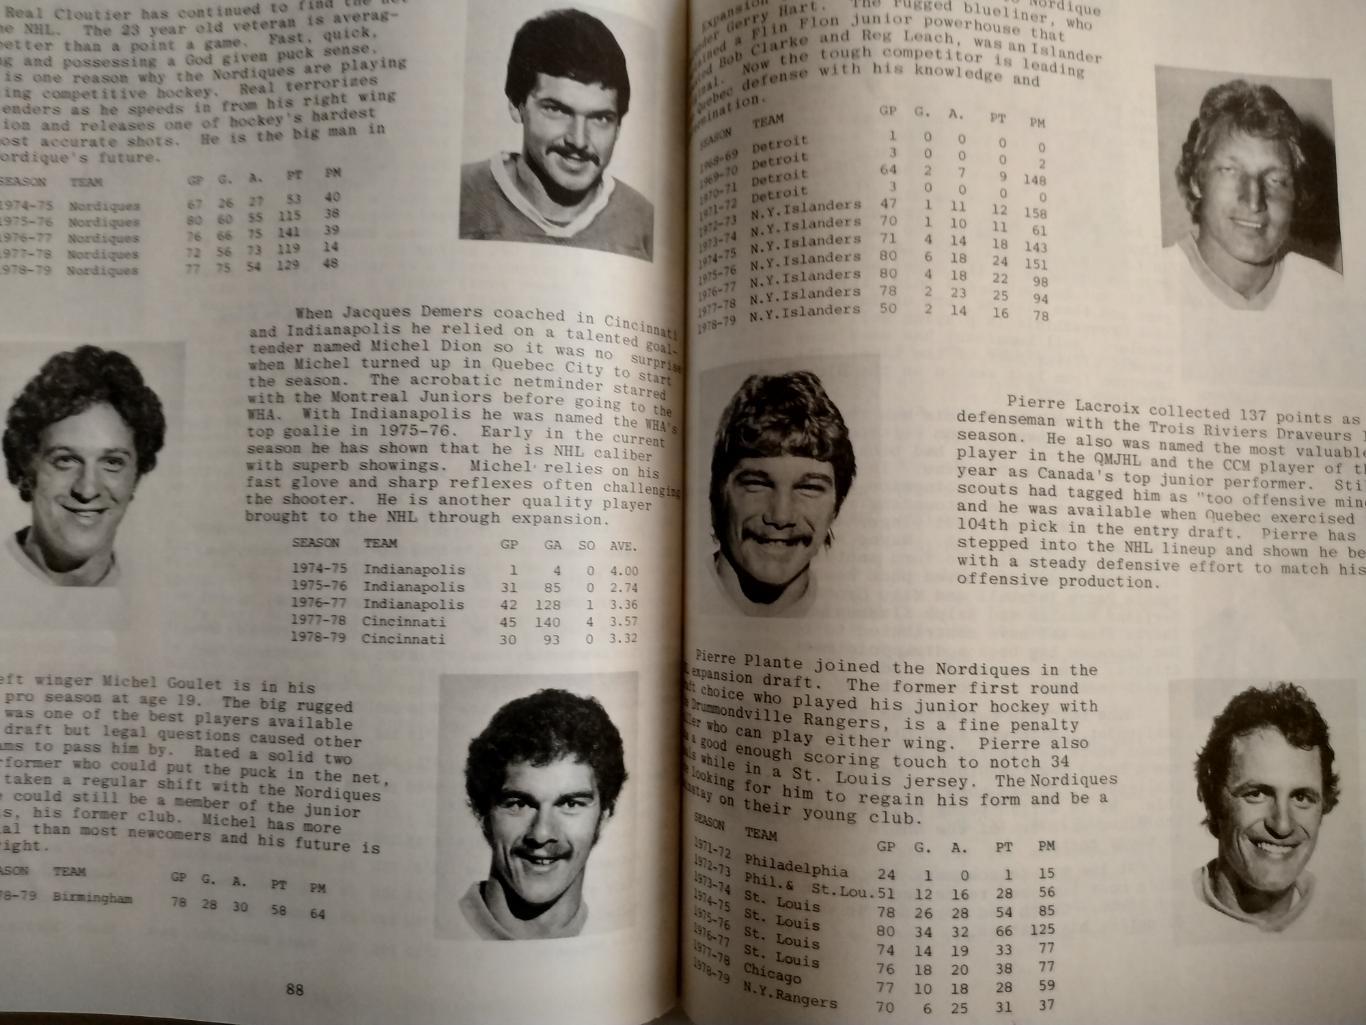 ХОККЕЙ СПРАВОЧНИК ЕЖЕГОДНИК НХЛ КЛАССИК 1979-80 HOCKEY CLASSIC MIDSEASON REVIEW 5